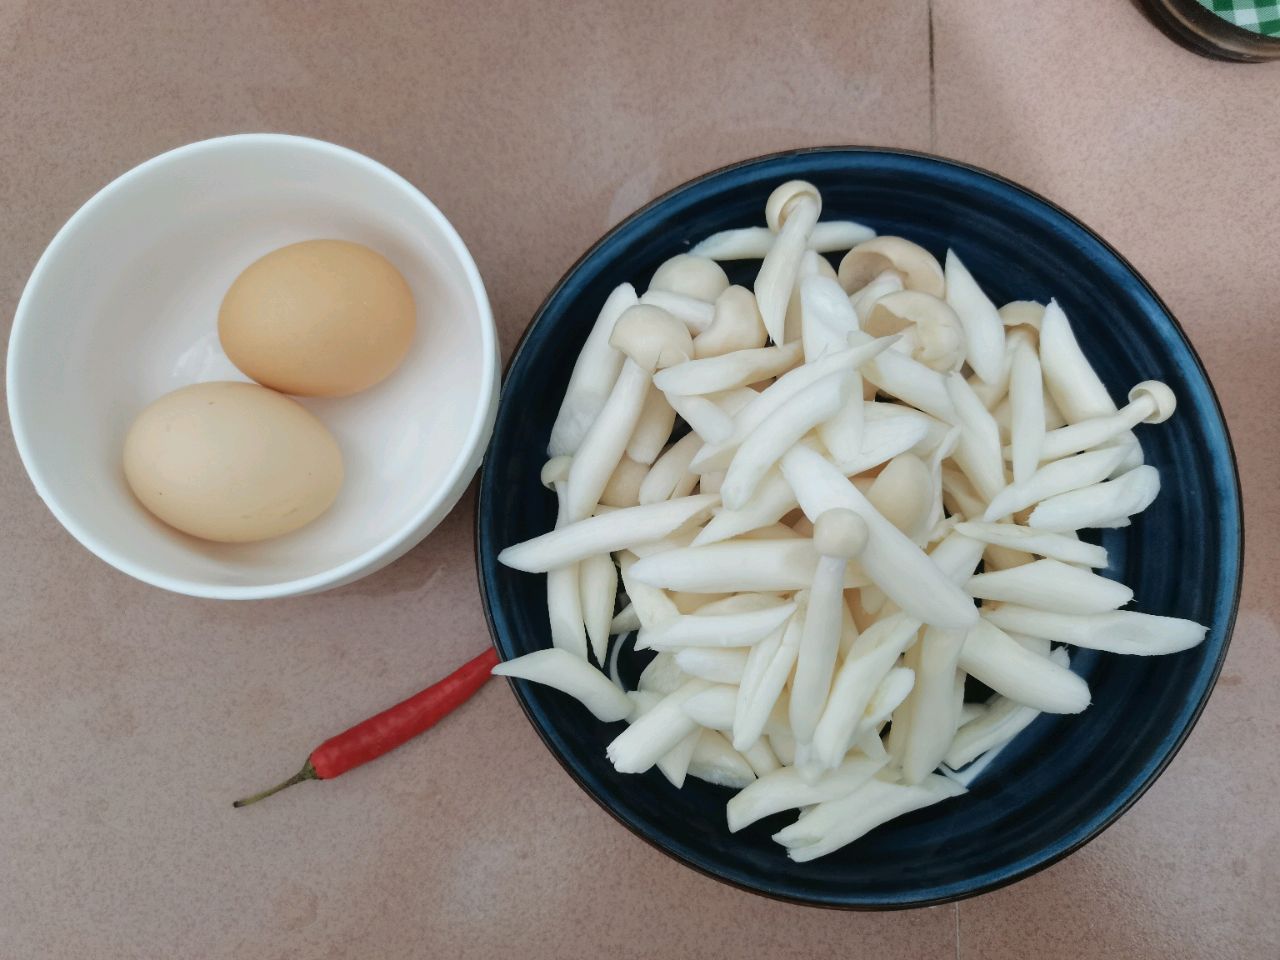 海鲜菇炒鸡蛋怎么做_海鲜菇炒鸡蛋的做法_斯佳丽_豆果美食